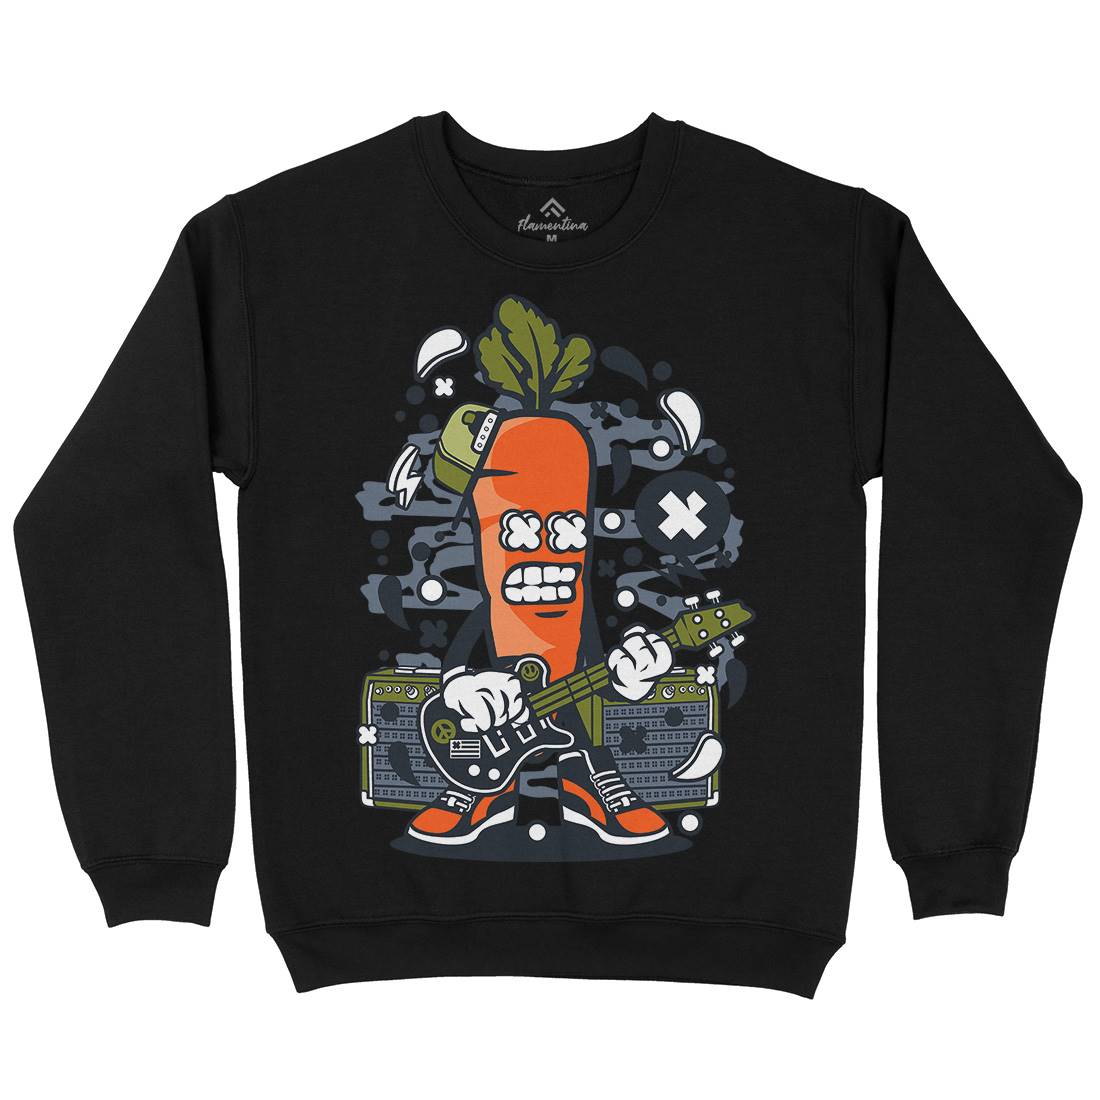 Carrot Rocker Kids Crew Neck Sweatshirt Music C050